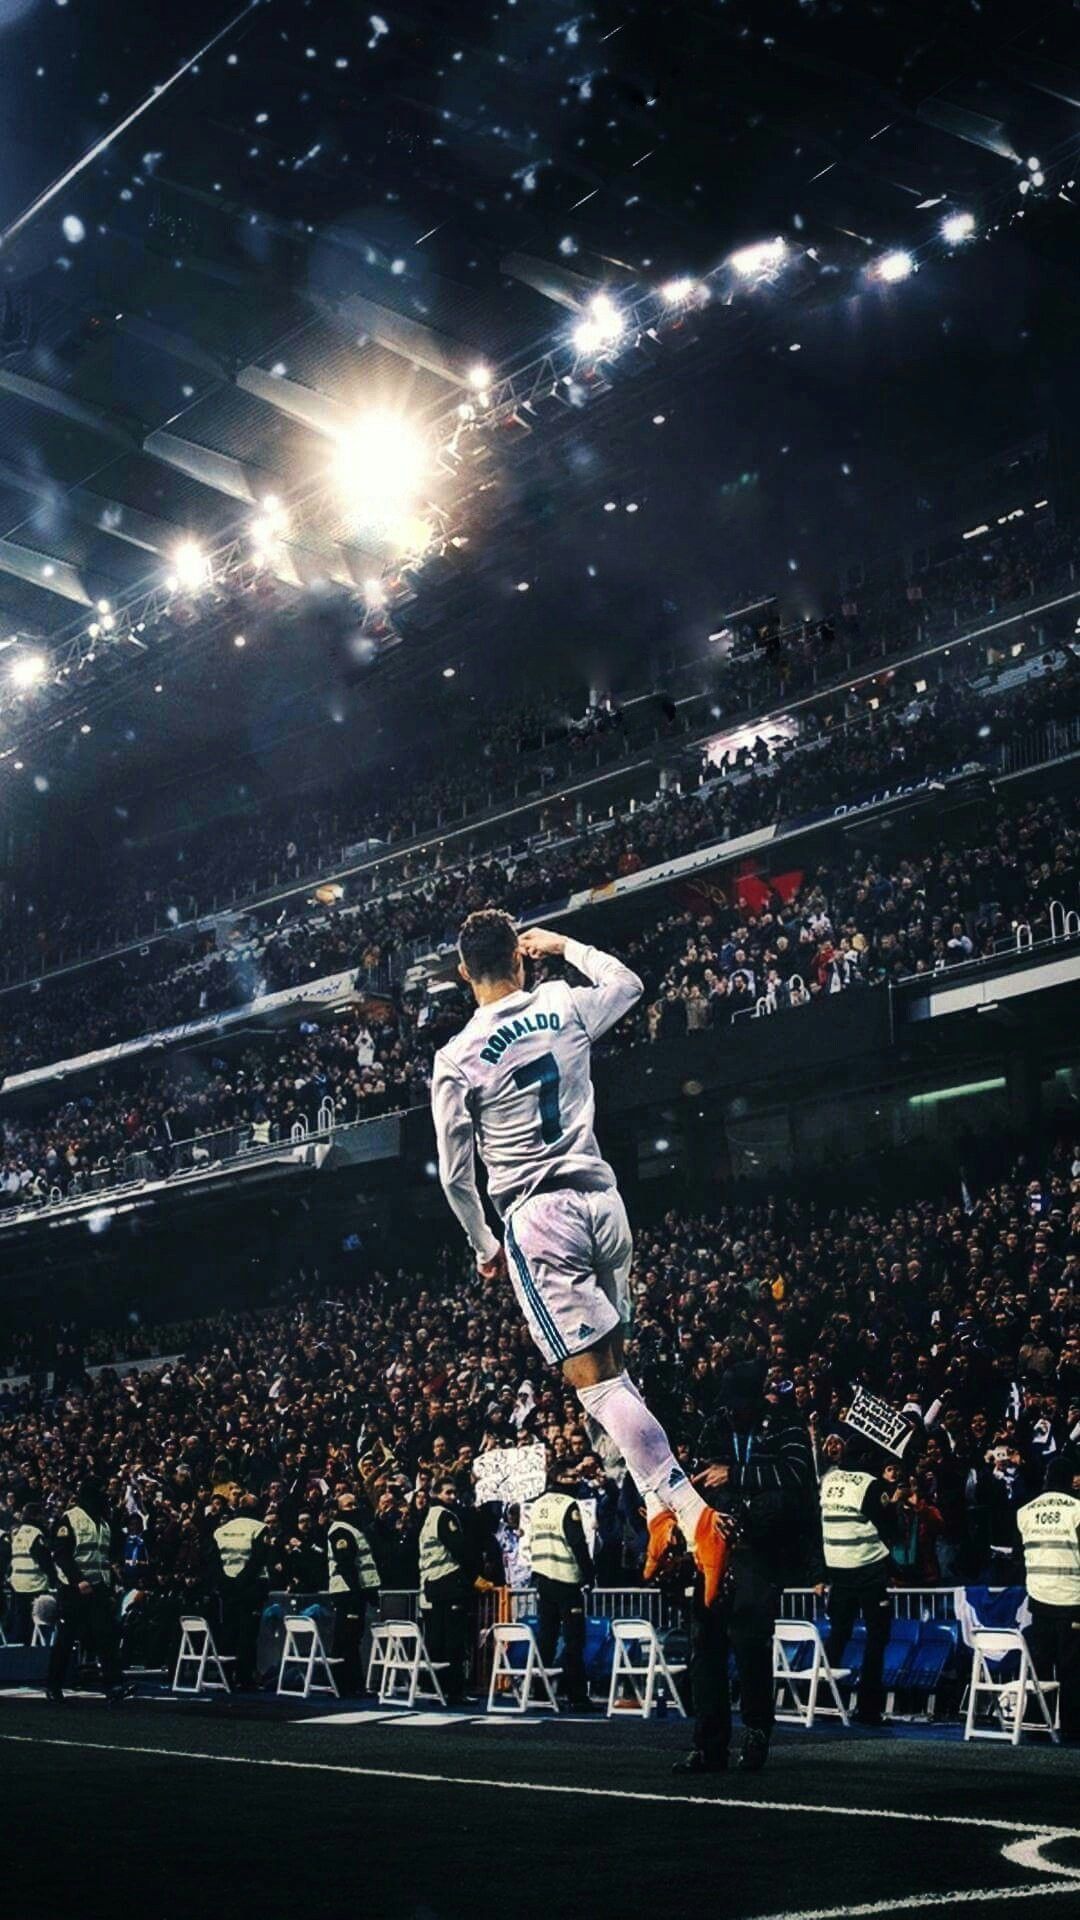 Ảnh nền 4K Ronaldo sẽ mang lại niềm hứng khởi cho mọi người yêu thích bóng đá và công nghệ. Với độ sắc nét cực cao và màu sắc sống động, bạn sẽ không muốn rời mắt khỏi chiếc điện thoại của mình.